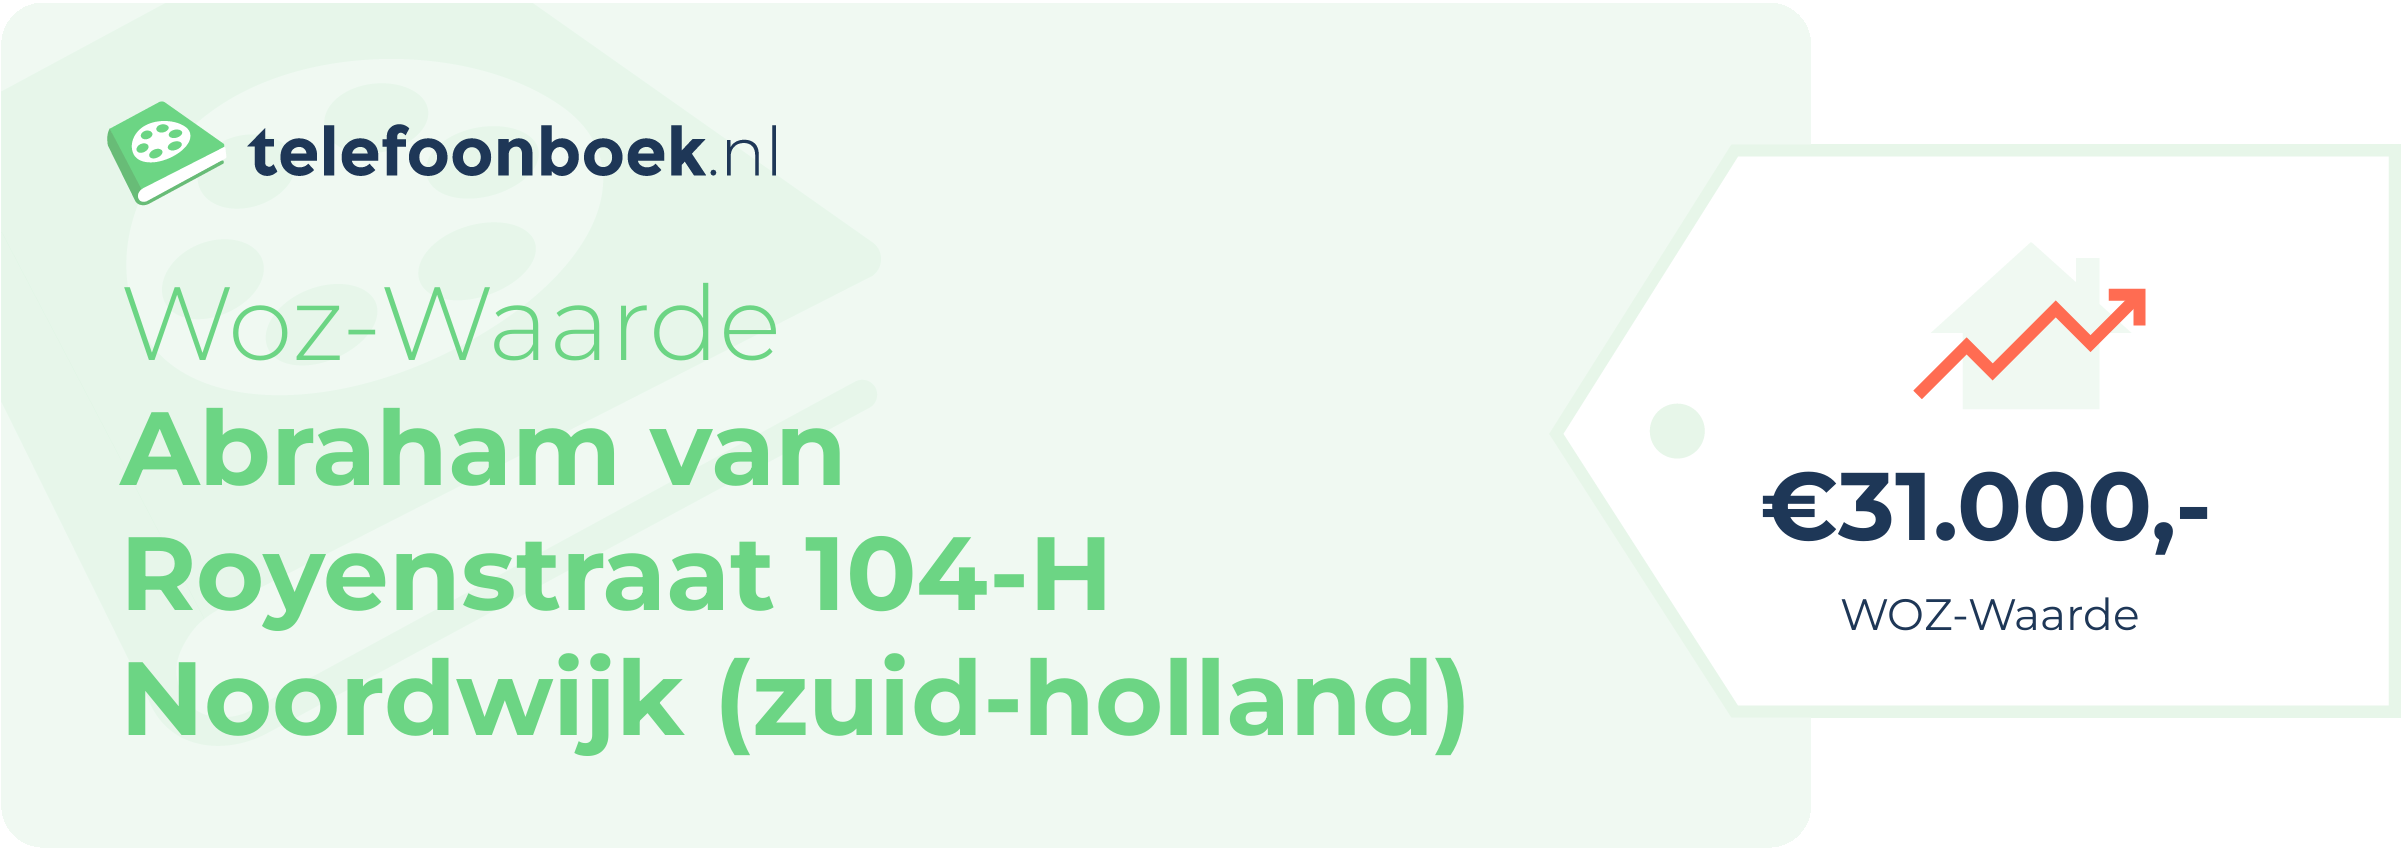 WOZ-waarde Abraham Van Royenstraat 104-H Noordwijk (Zuid-Holland)